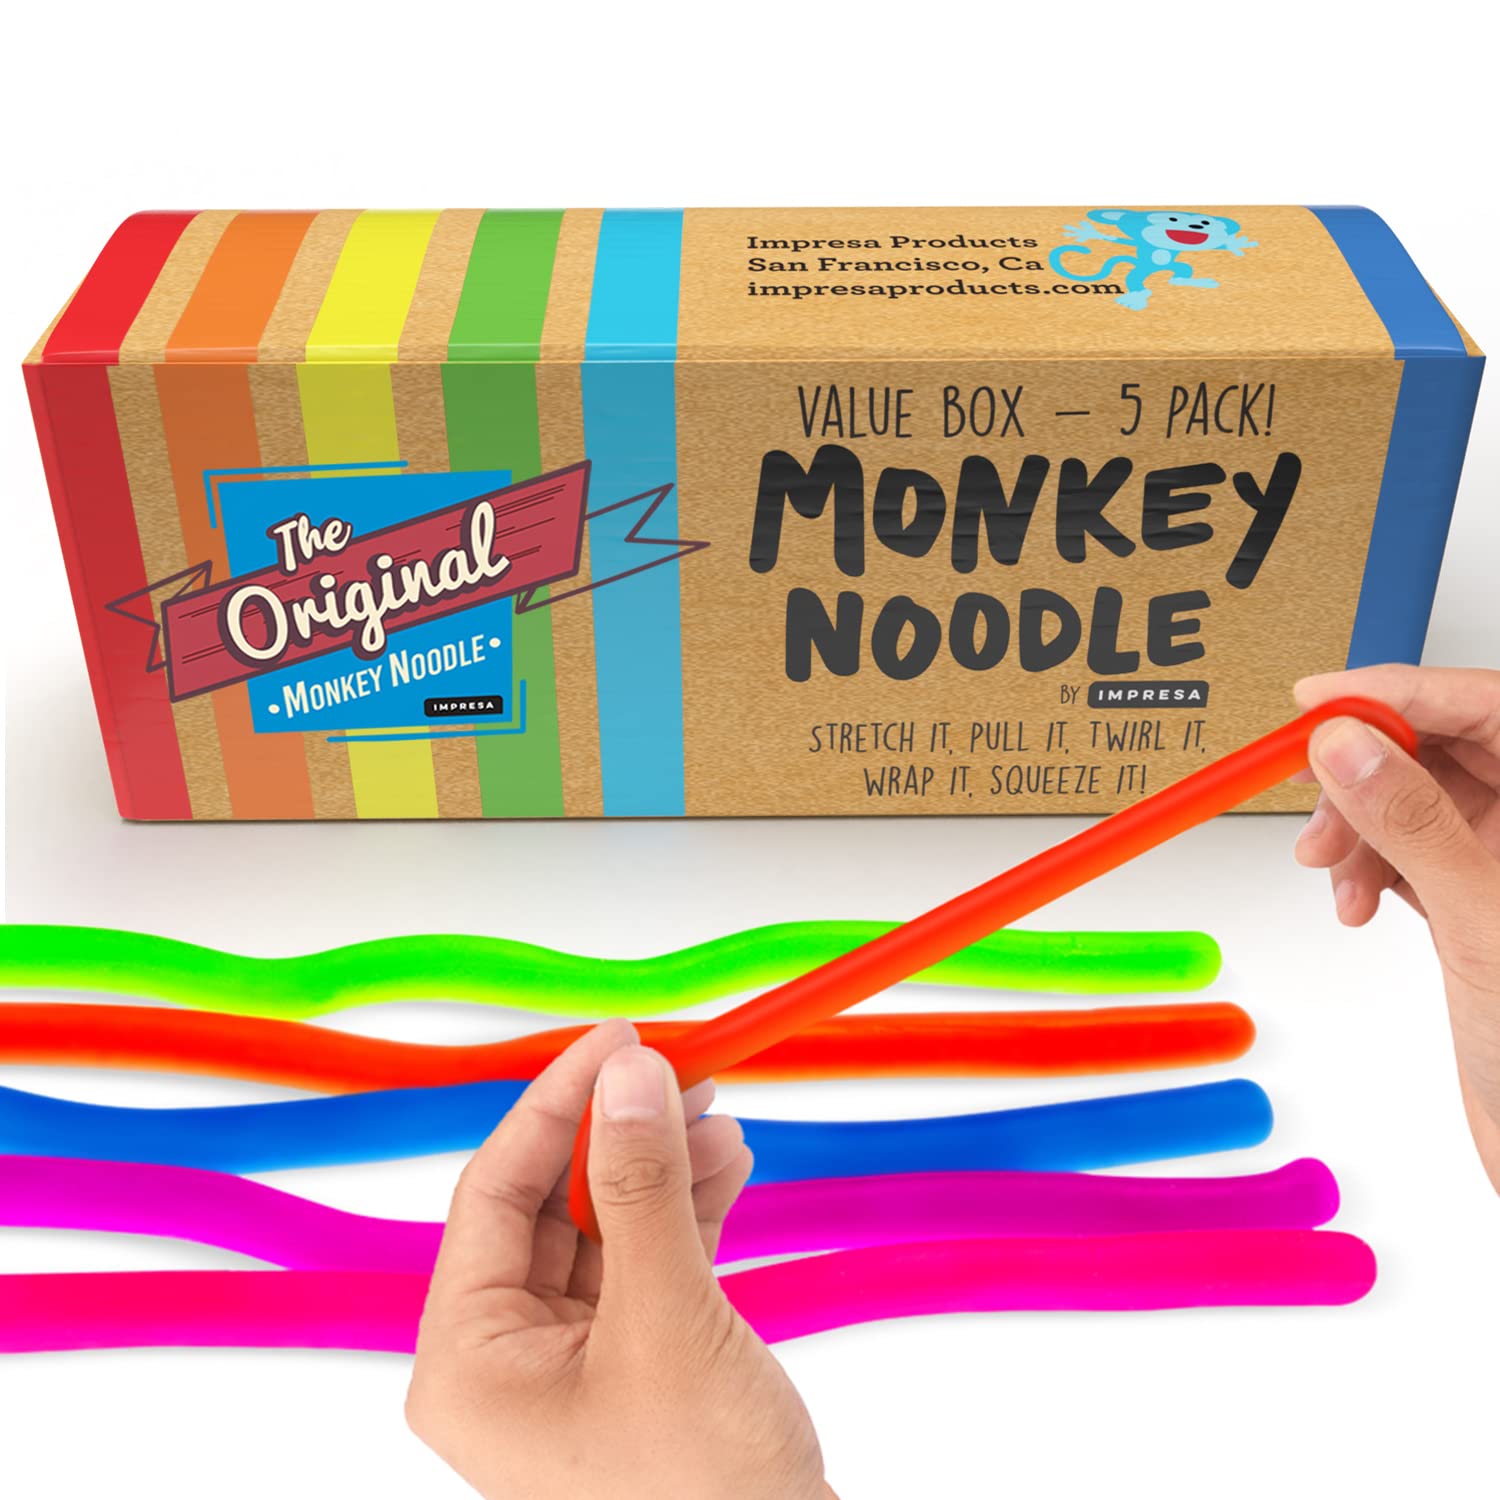 Impresa-Monkey-Noodle-Digital-Refresh-PDP-Tile_01